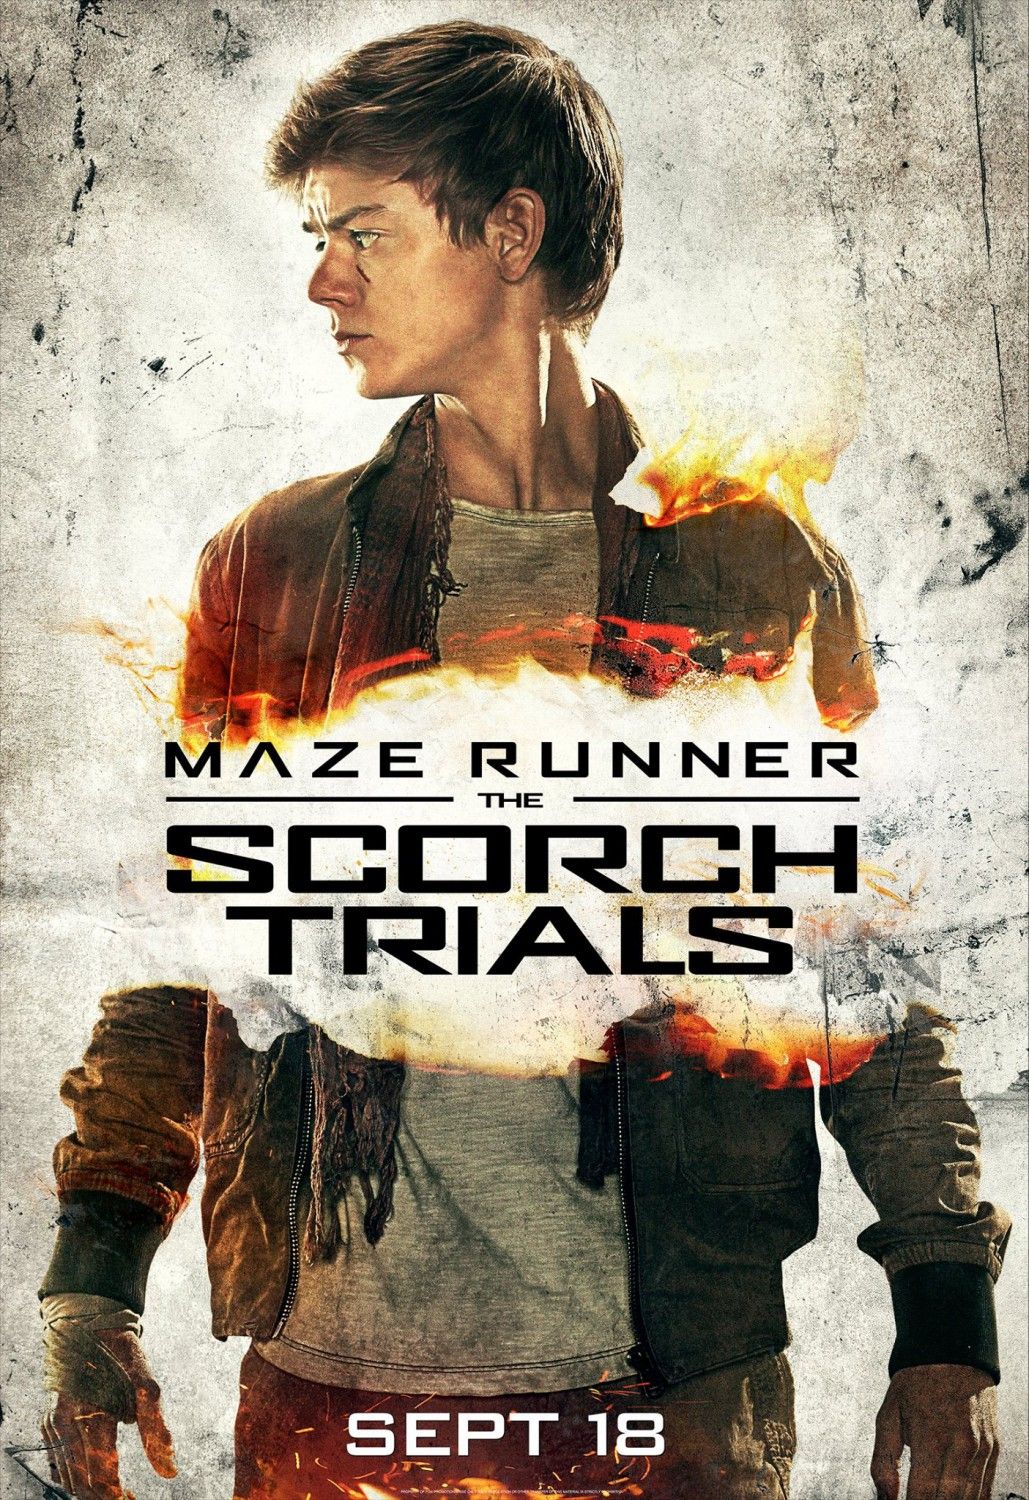 The Maze Runner Movie Poster  Maze runner movie, Maze runner, Maze runner  characters